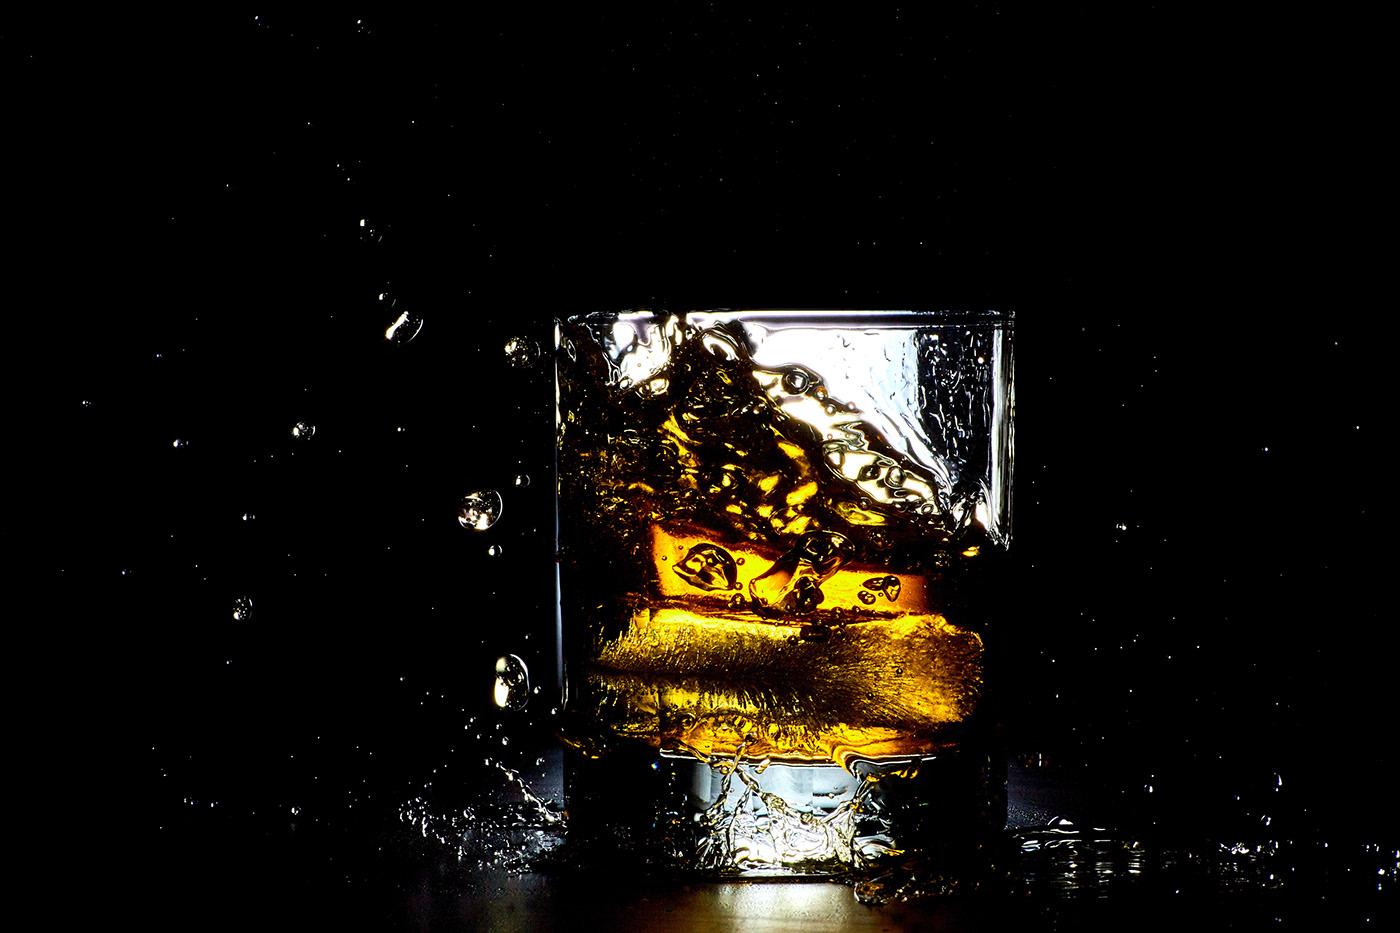 blackday bottle design Label Packaging Whiskey Whisky